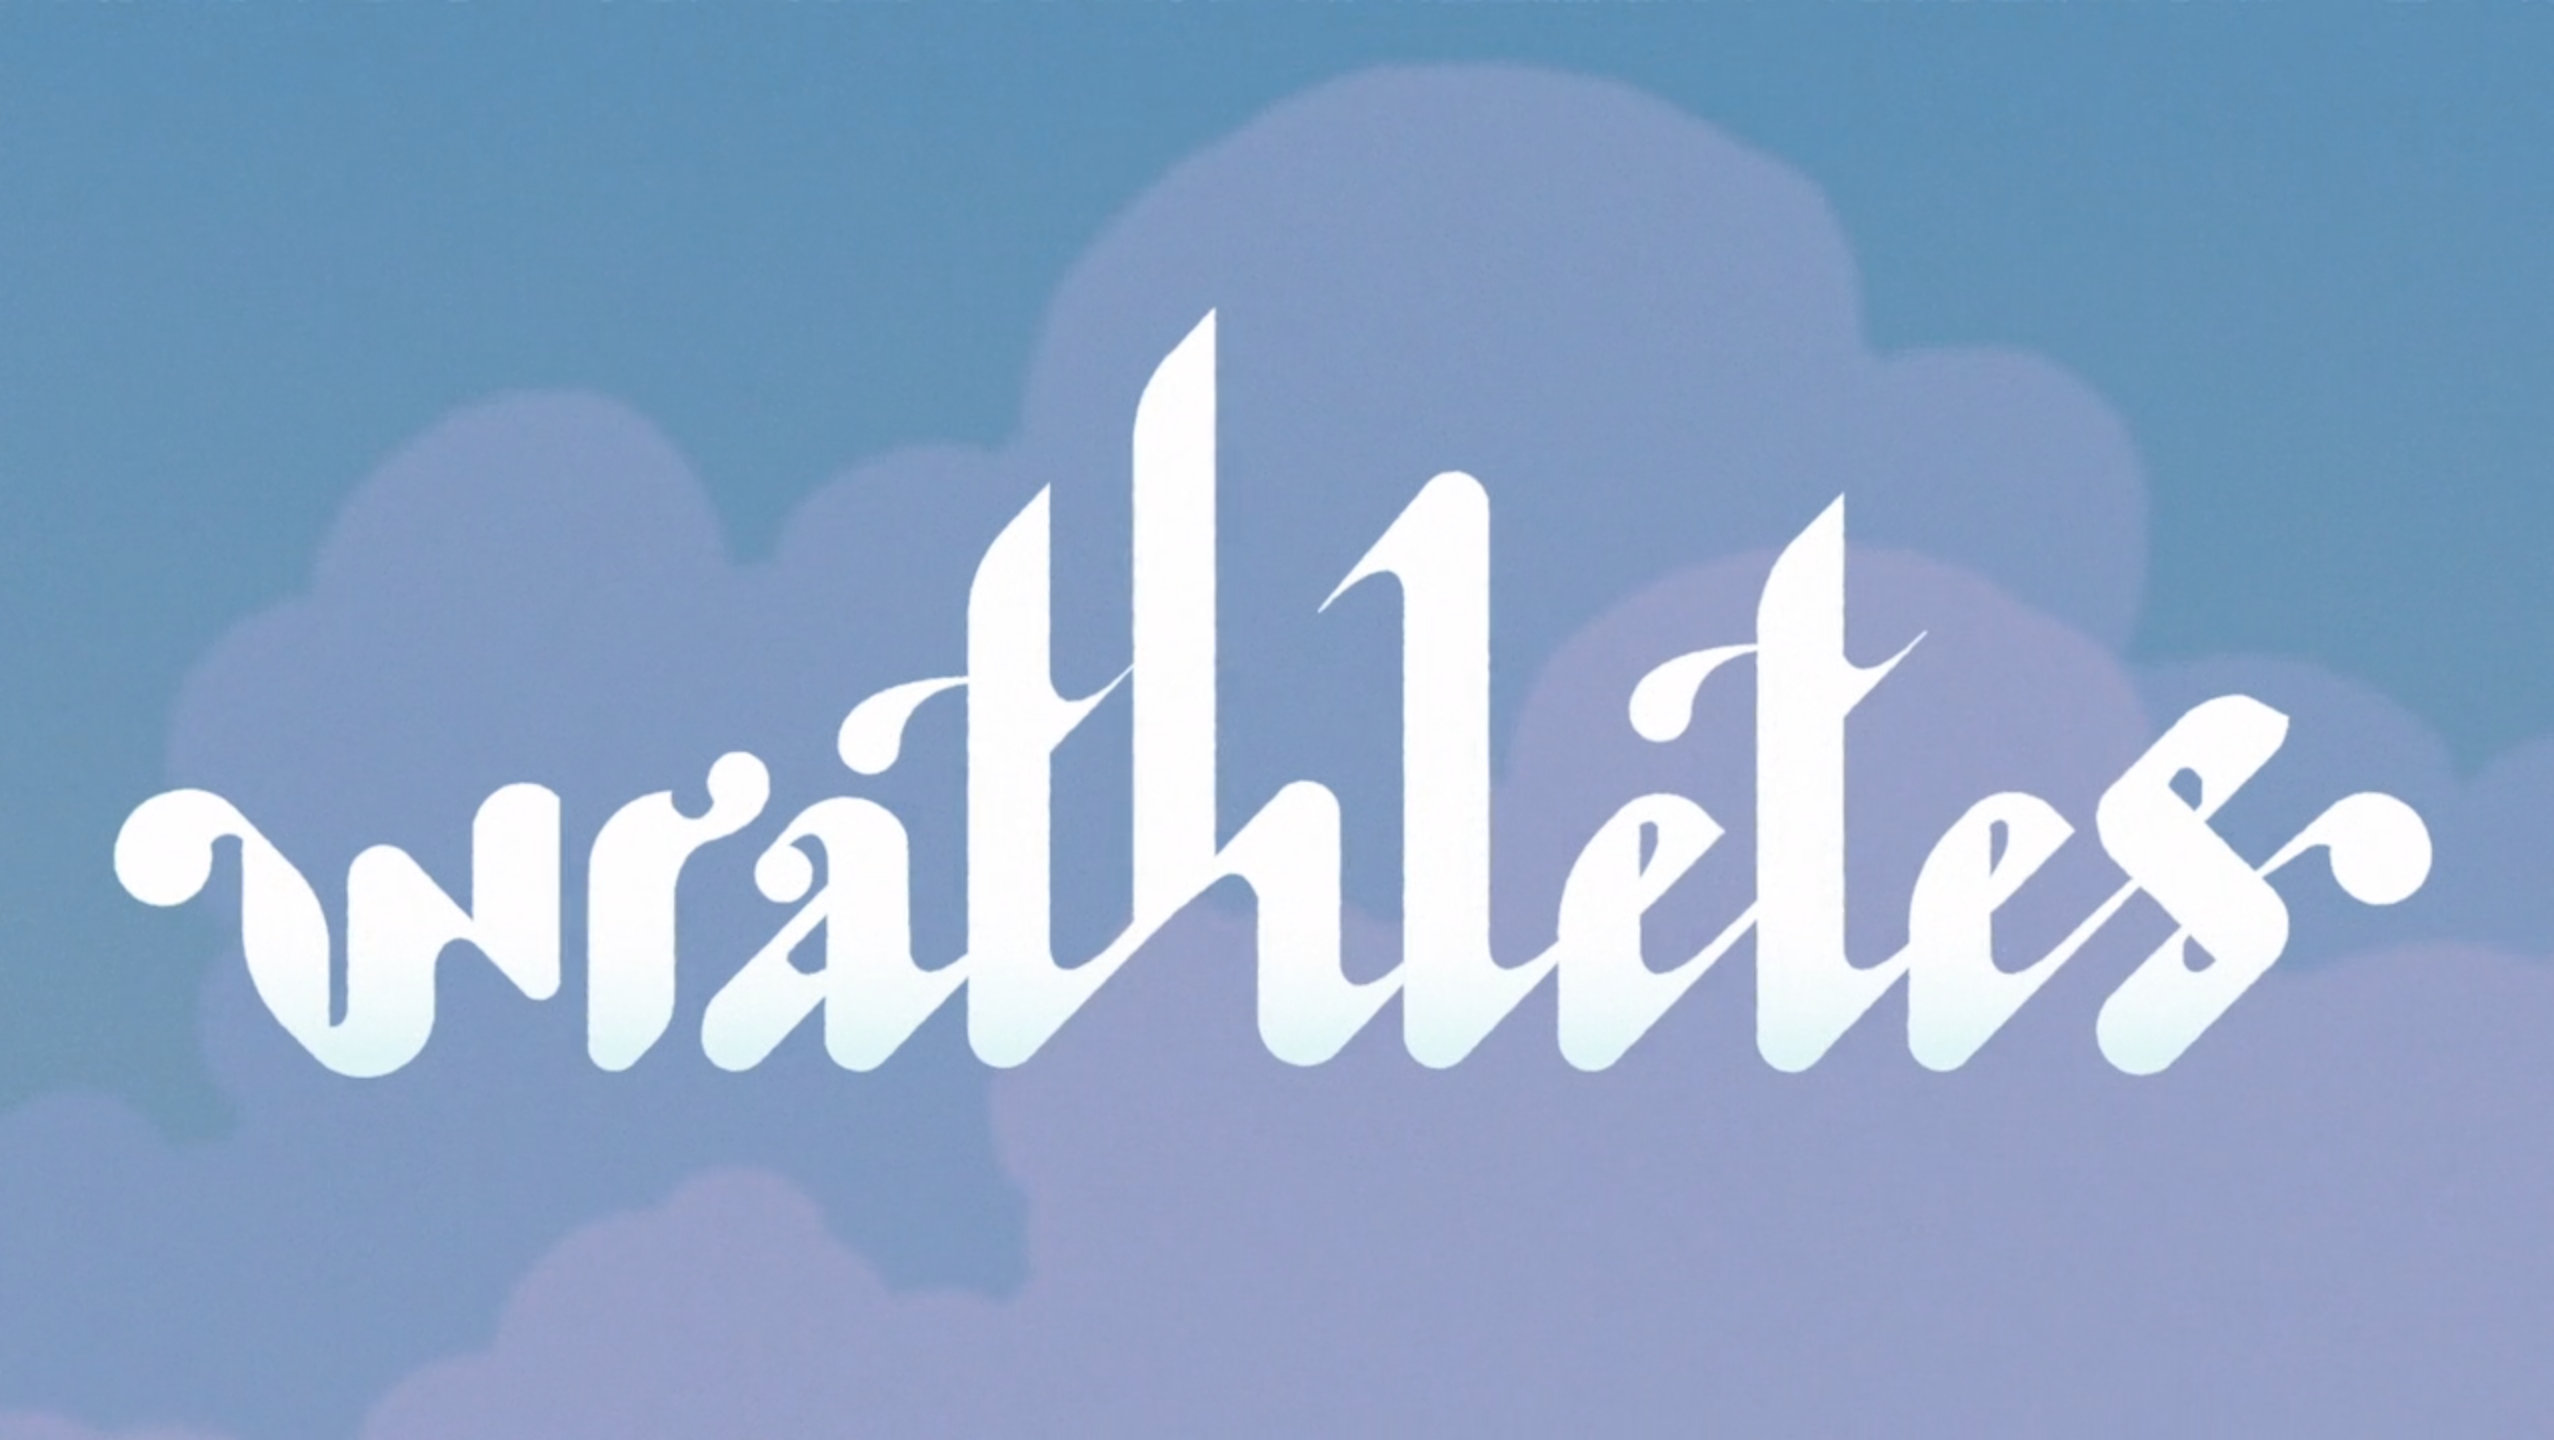 Wrathletes Logo